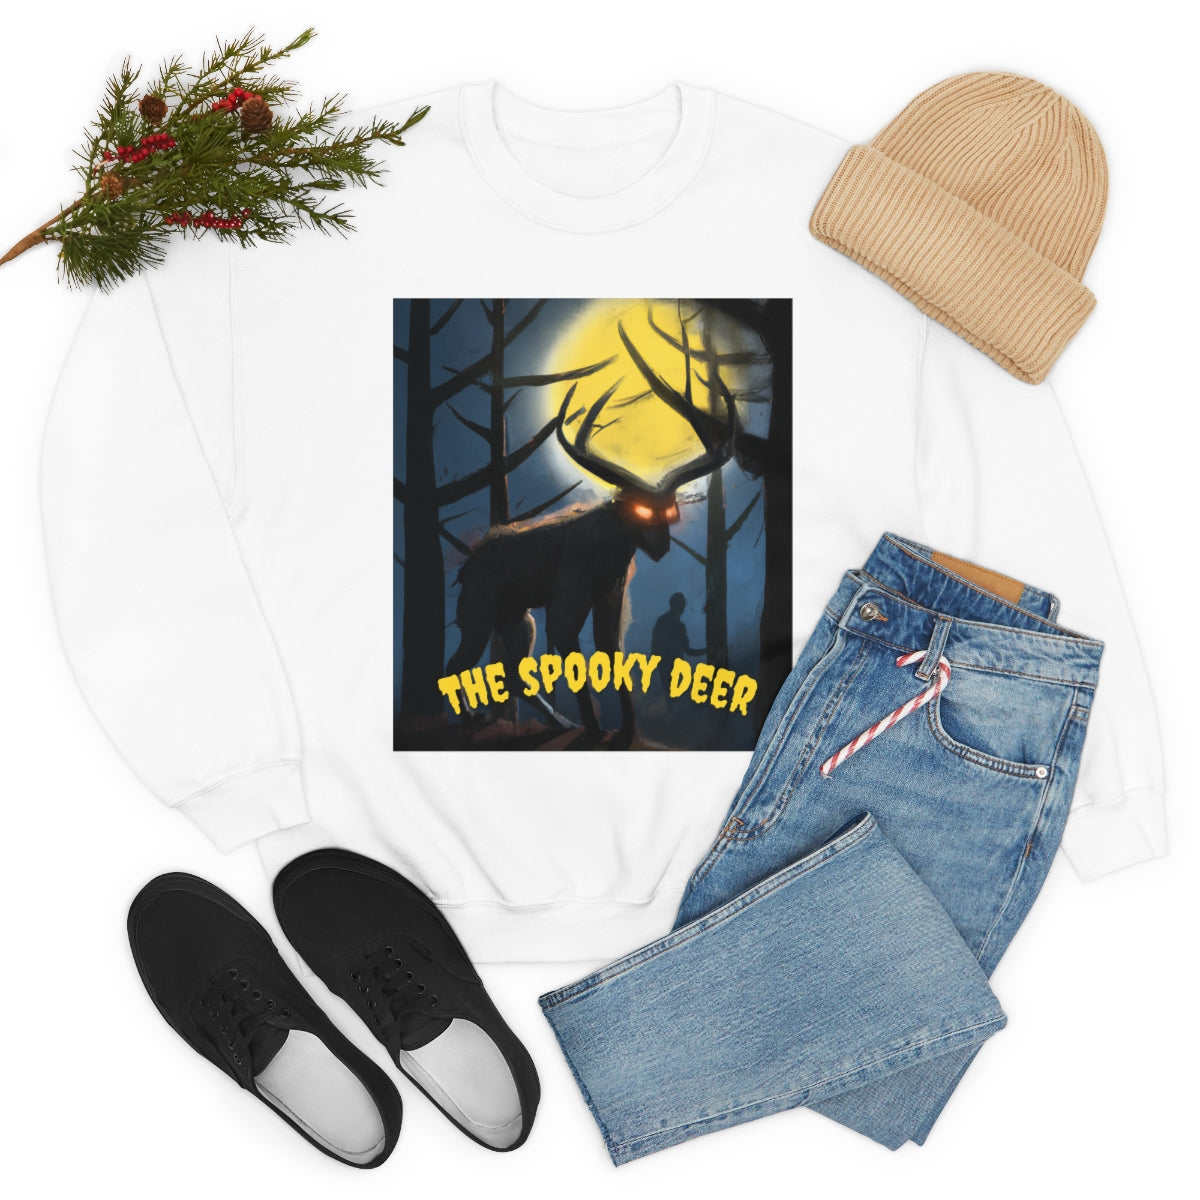 The Spooky Deer Wendigo Sweatshirt